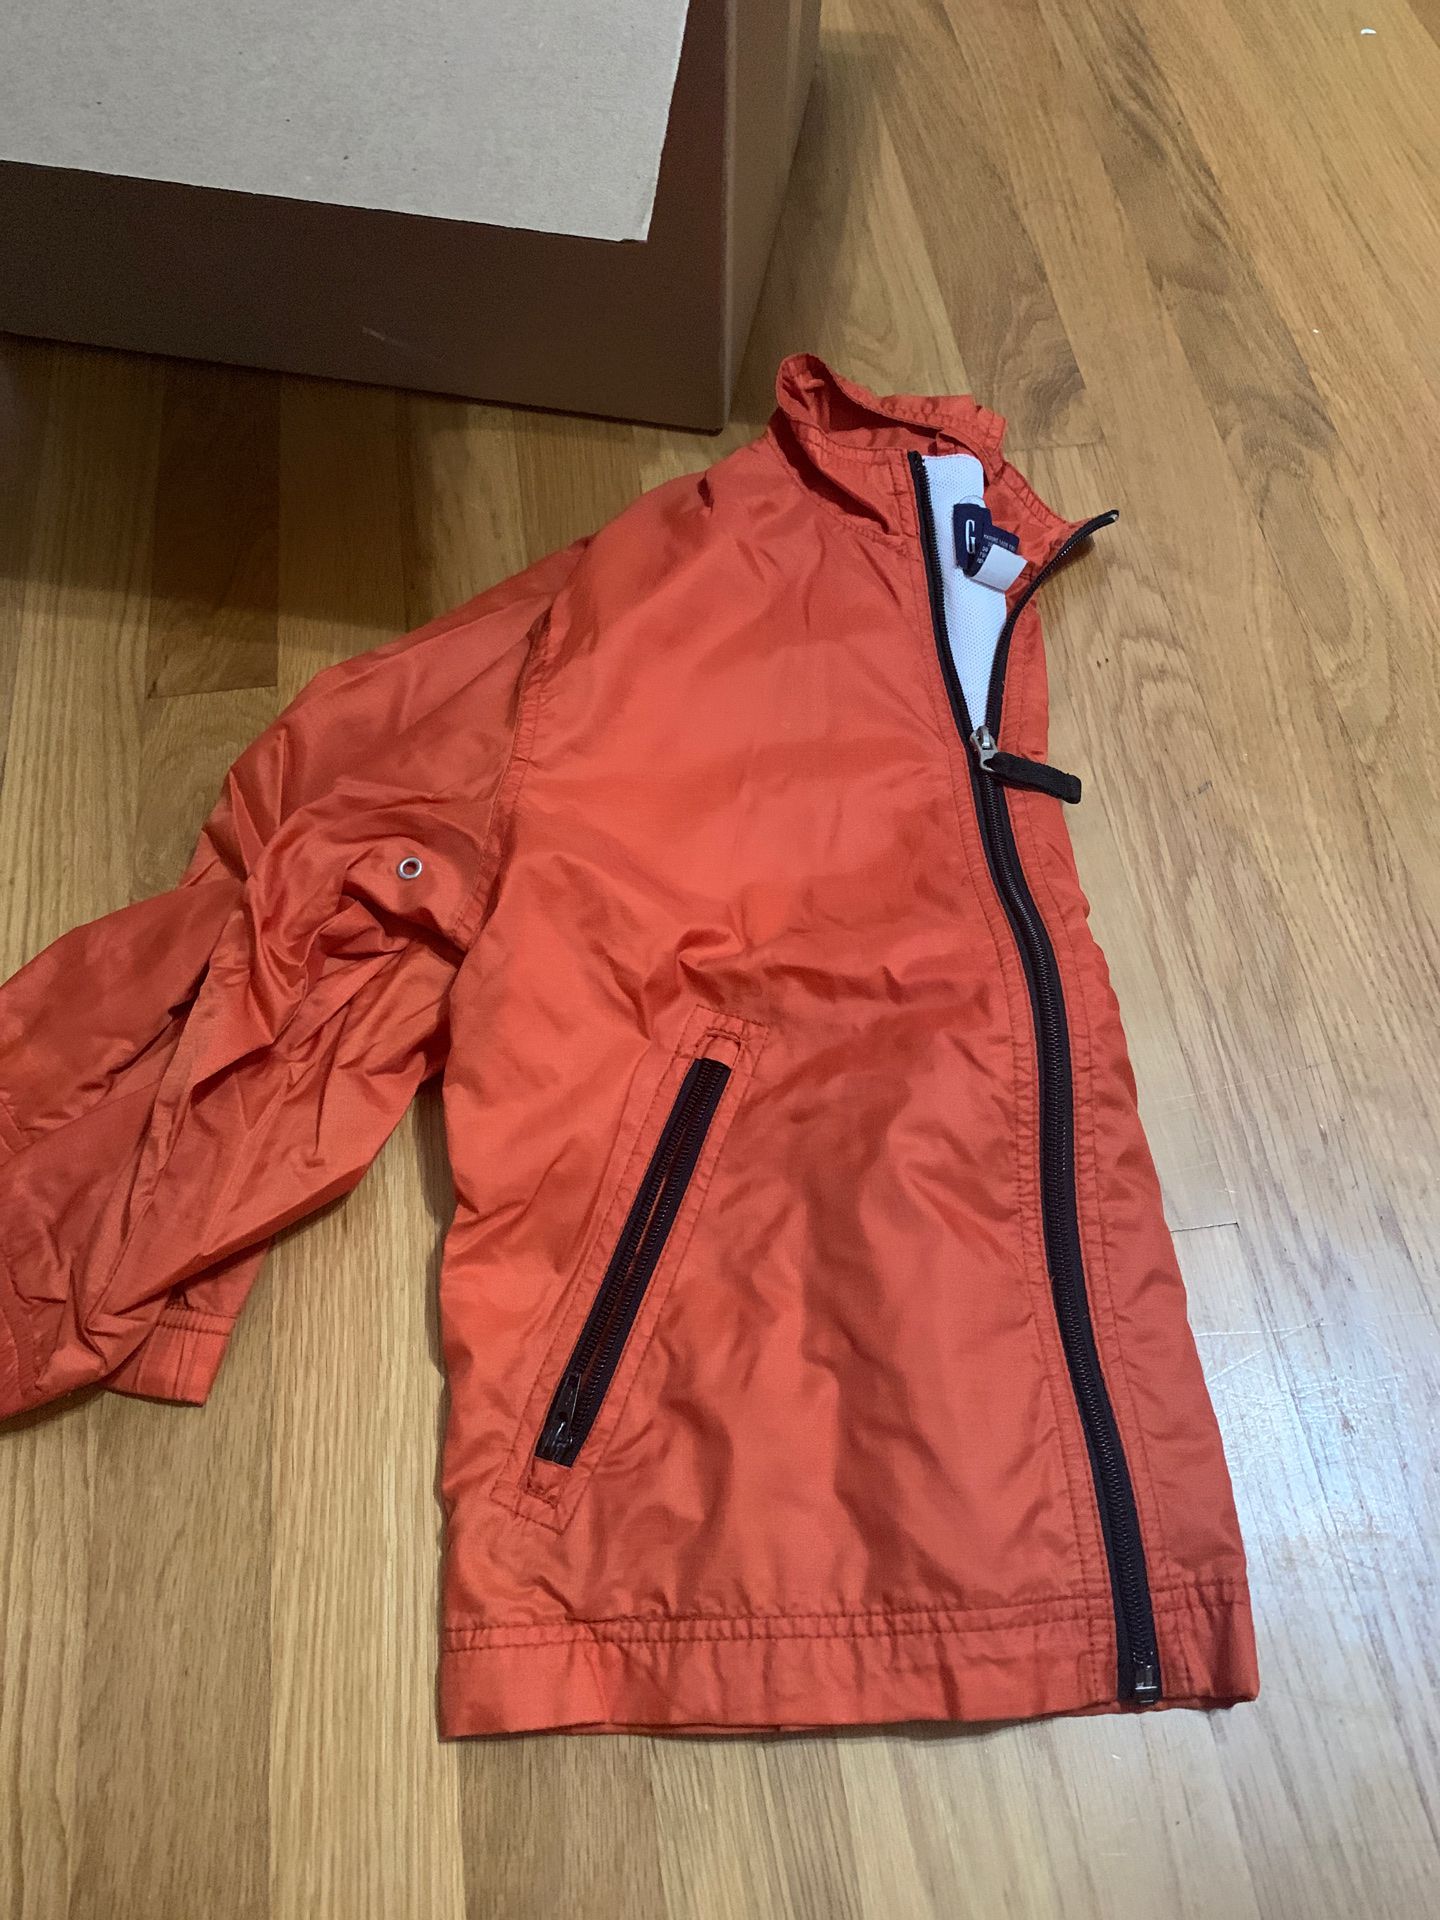 Gap orange jacket boy size s